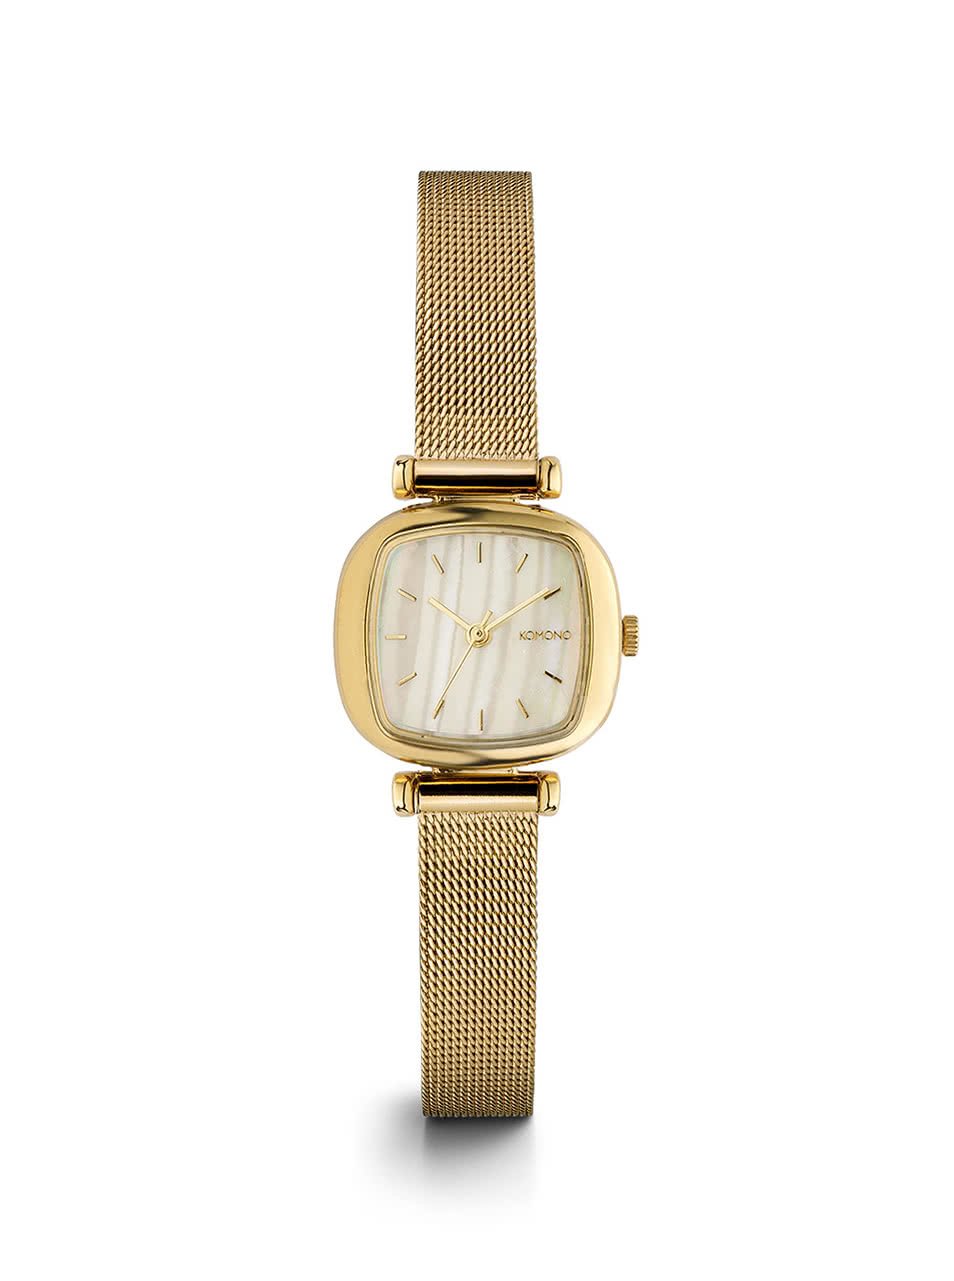 Dámské hodinky ve zlaté barvě s nerezovým páskem Komono Moneypenny Royale